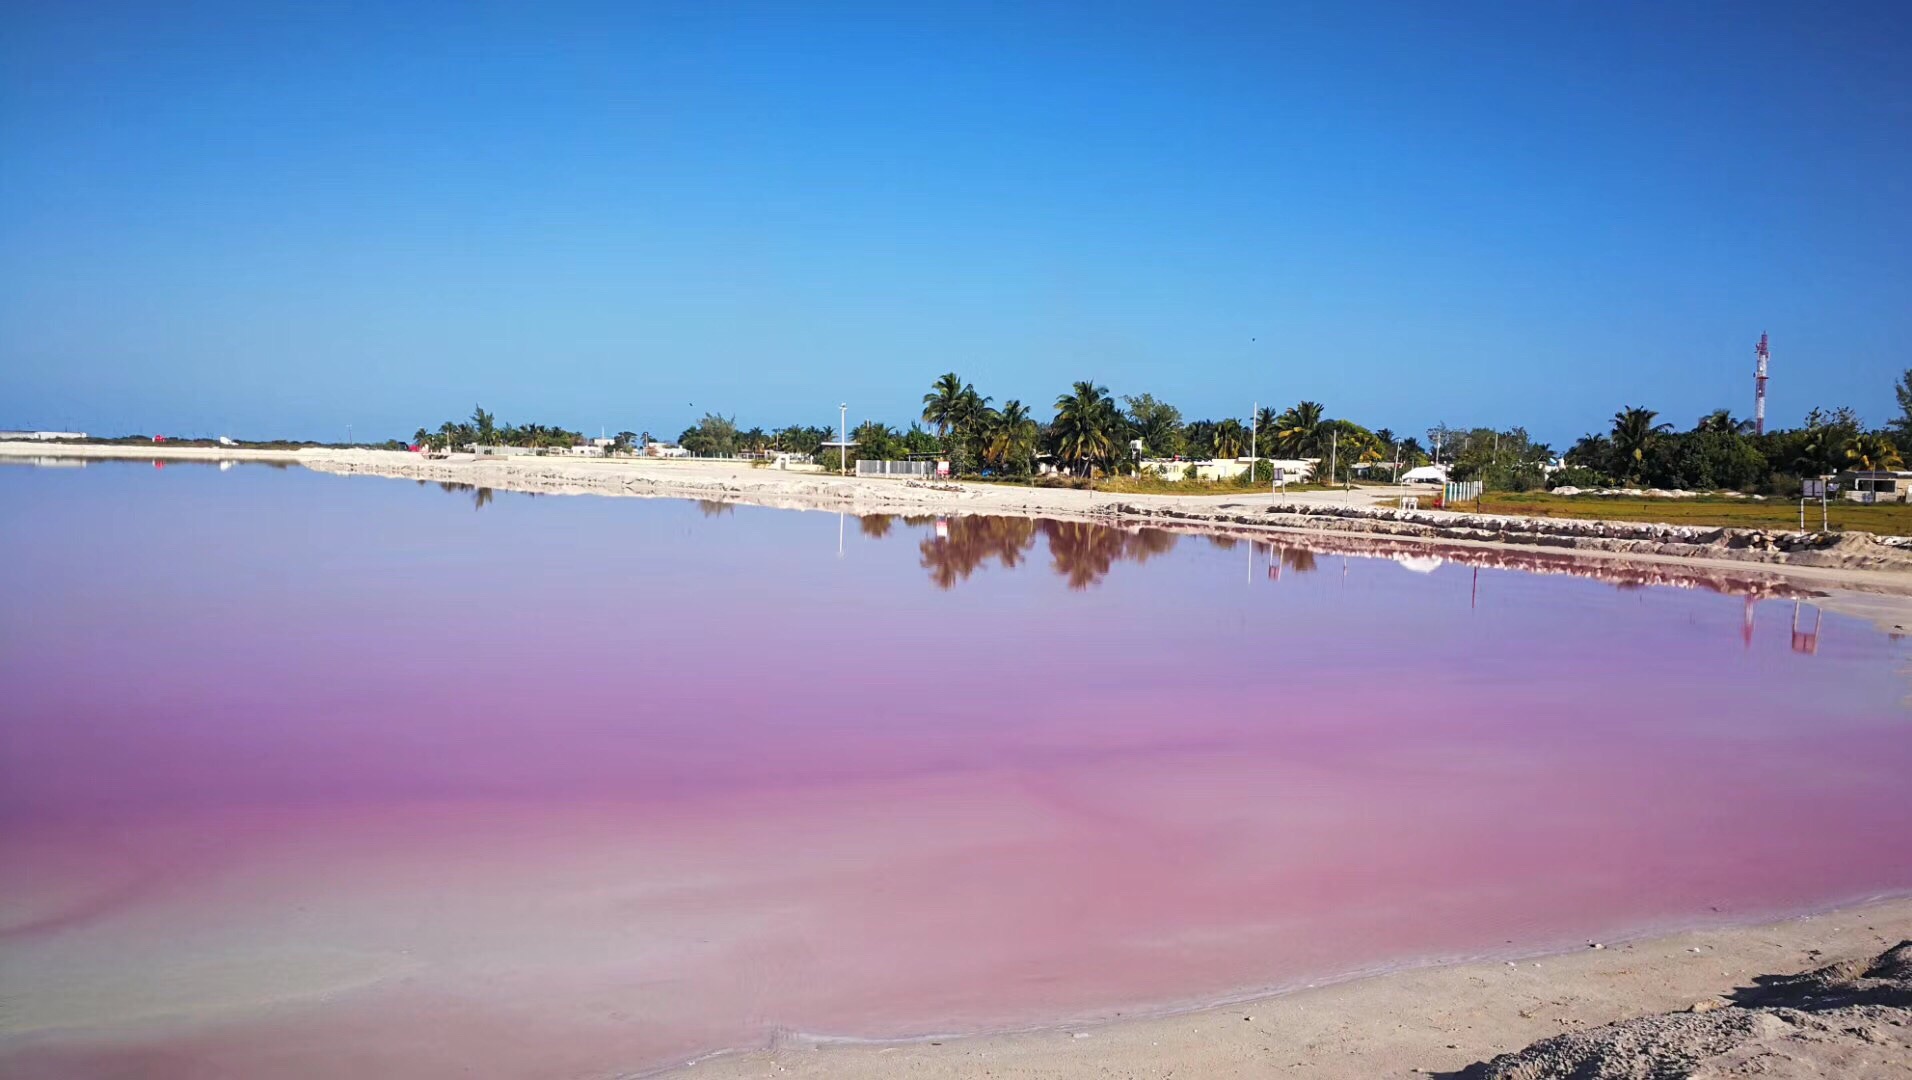 粉红湖，是海澡湖水在阳光的照射下出现粉红色，阳光越强烈粉红色越深广，景色迷人，适合度假的好地方，也是